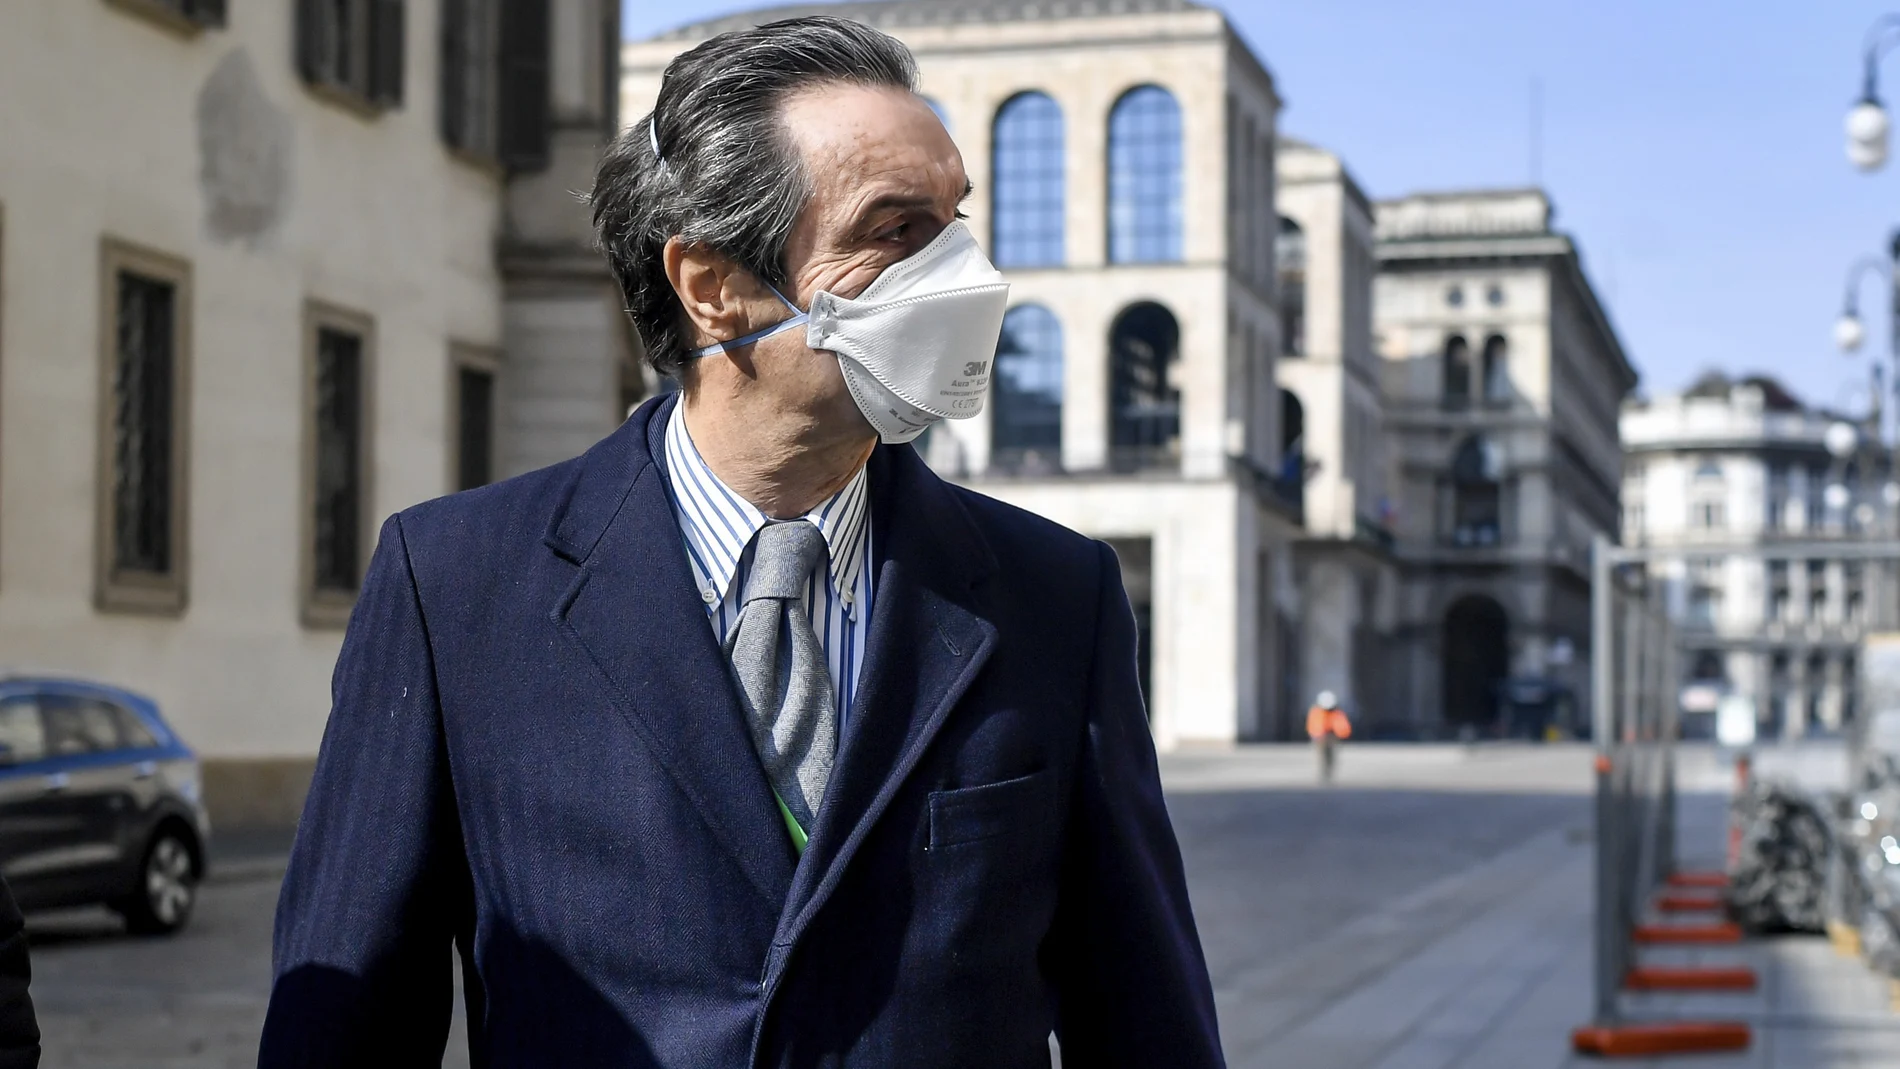 El gobernador de la región de Lombardía, Attilio Fontana, lleva puesta una mascarilla mientras camina por Milán